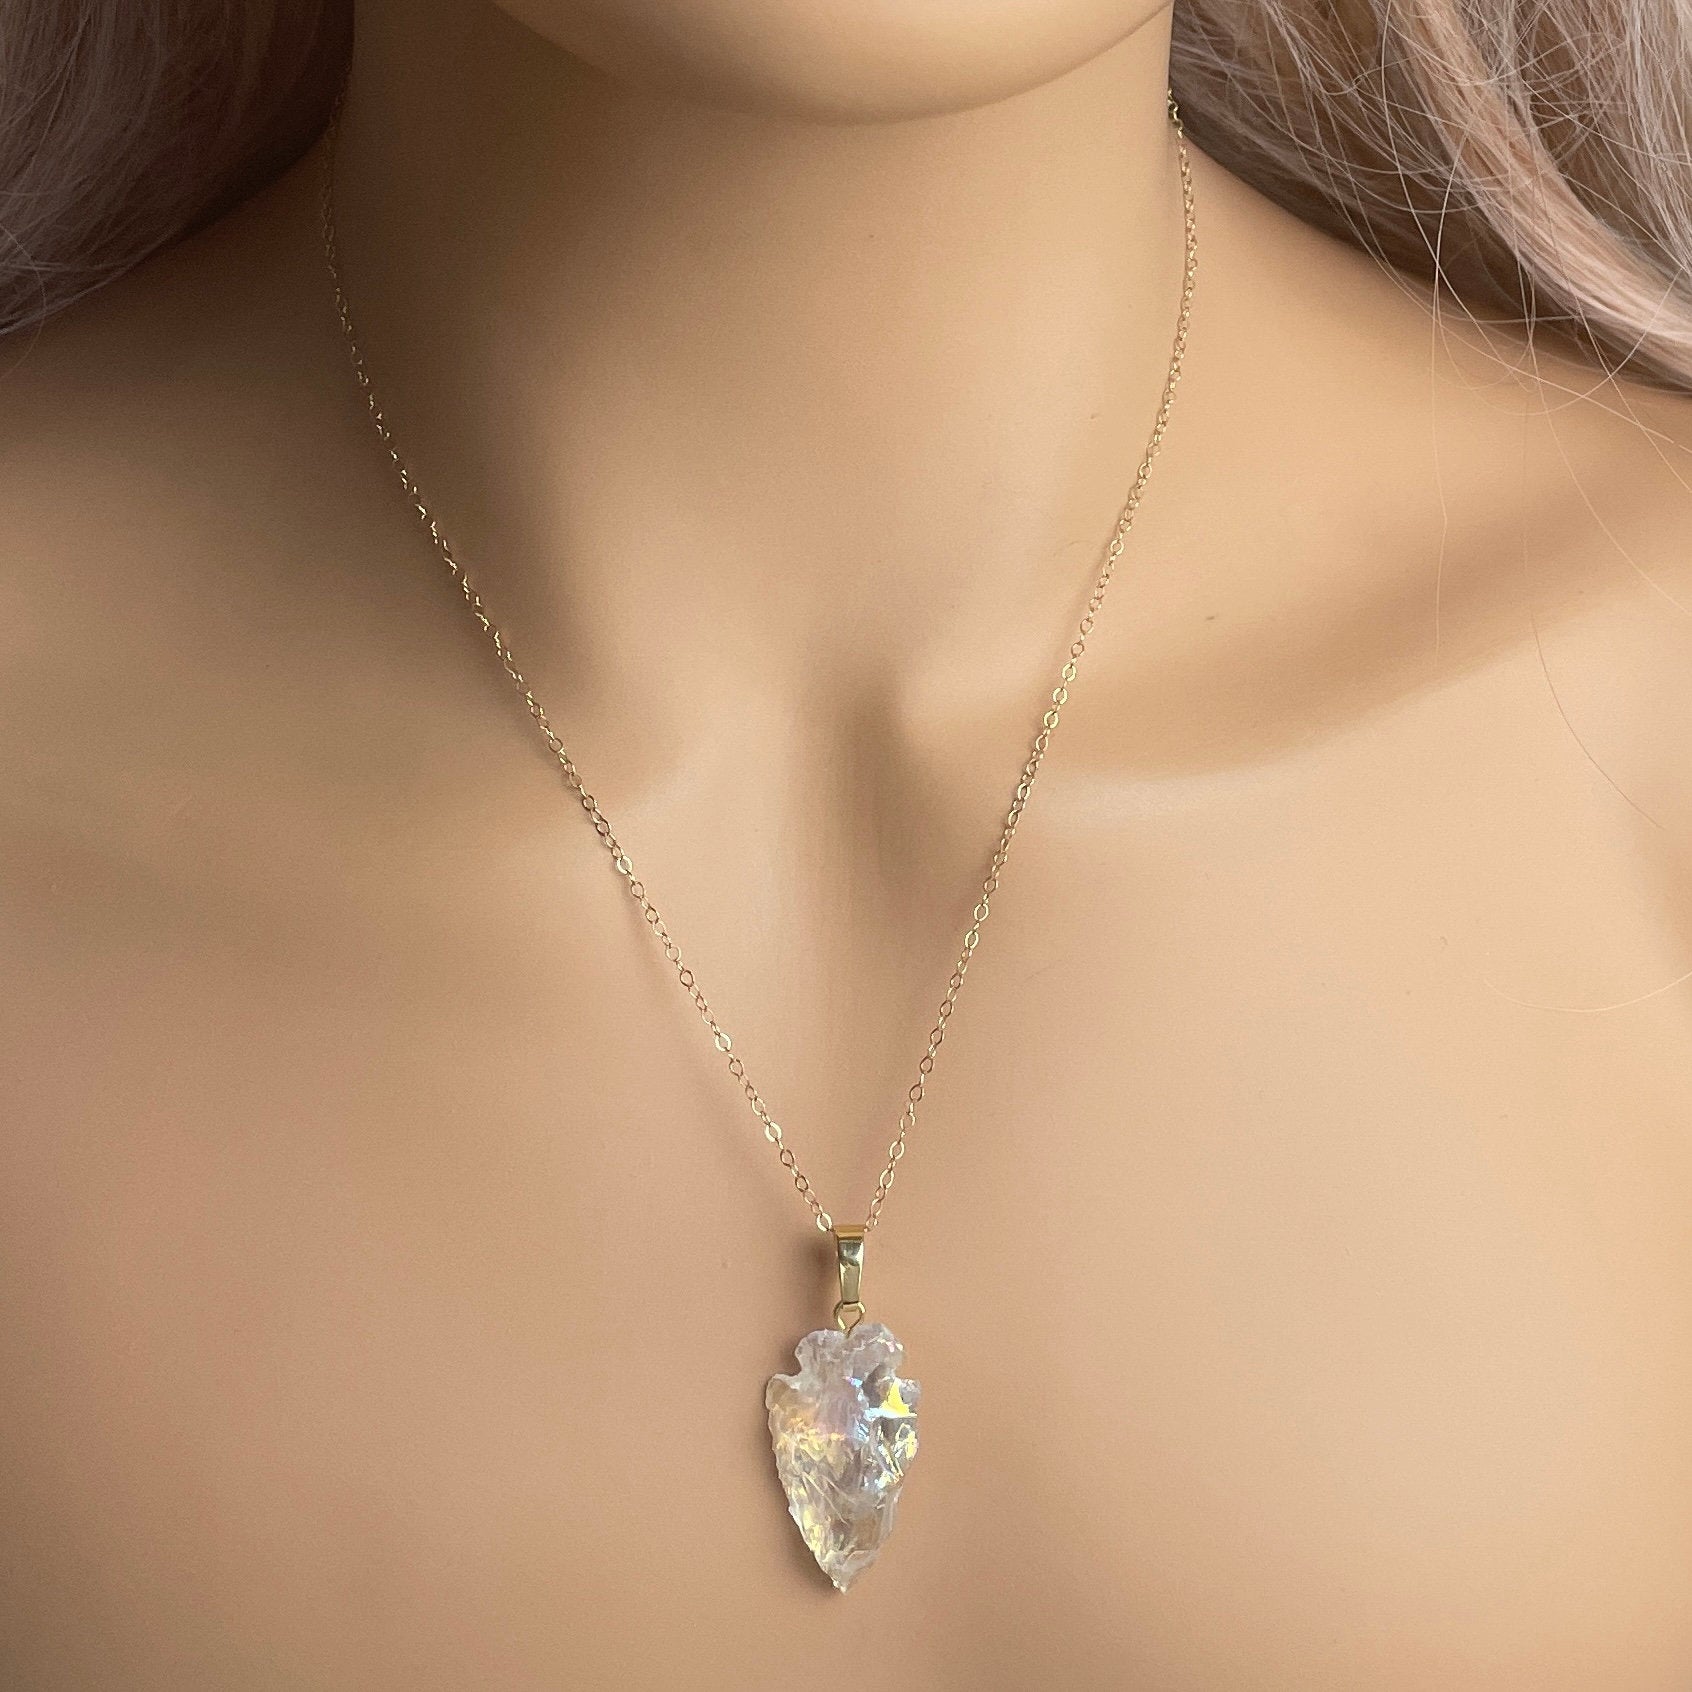 Aqua Aura or Angel Aura Quartz Pendant Necklace Reiki Healing Ladies Gift |  eBay